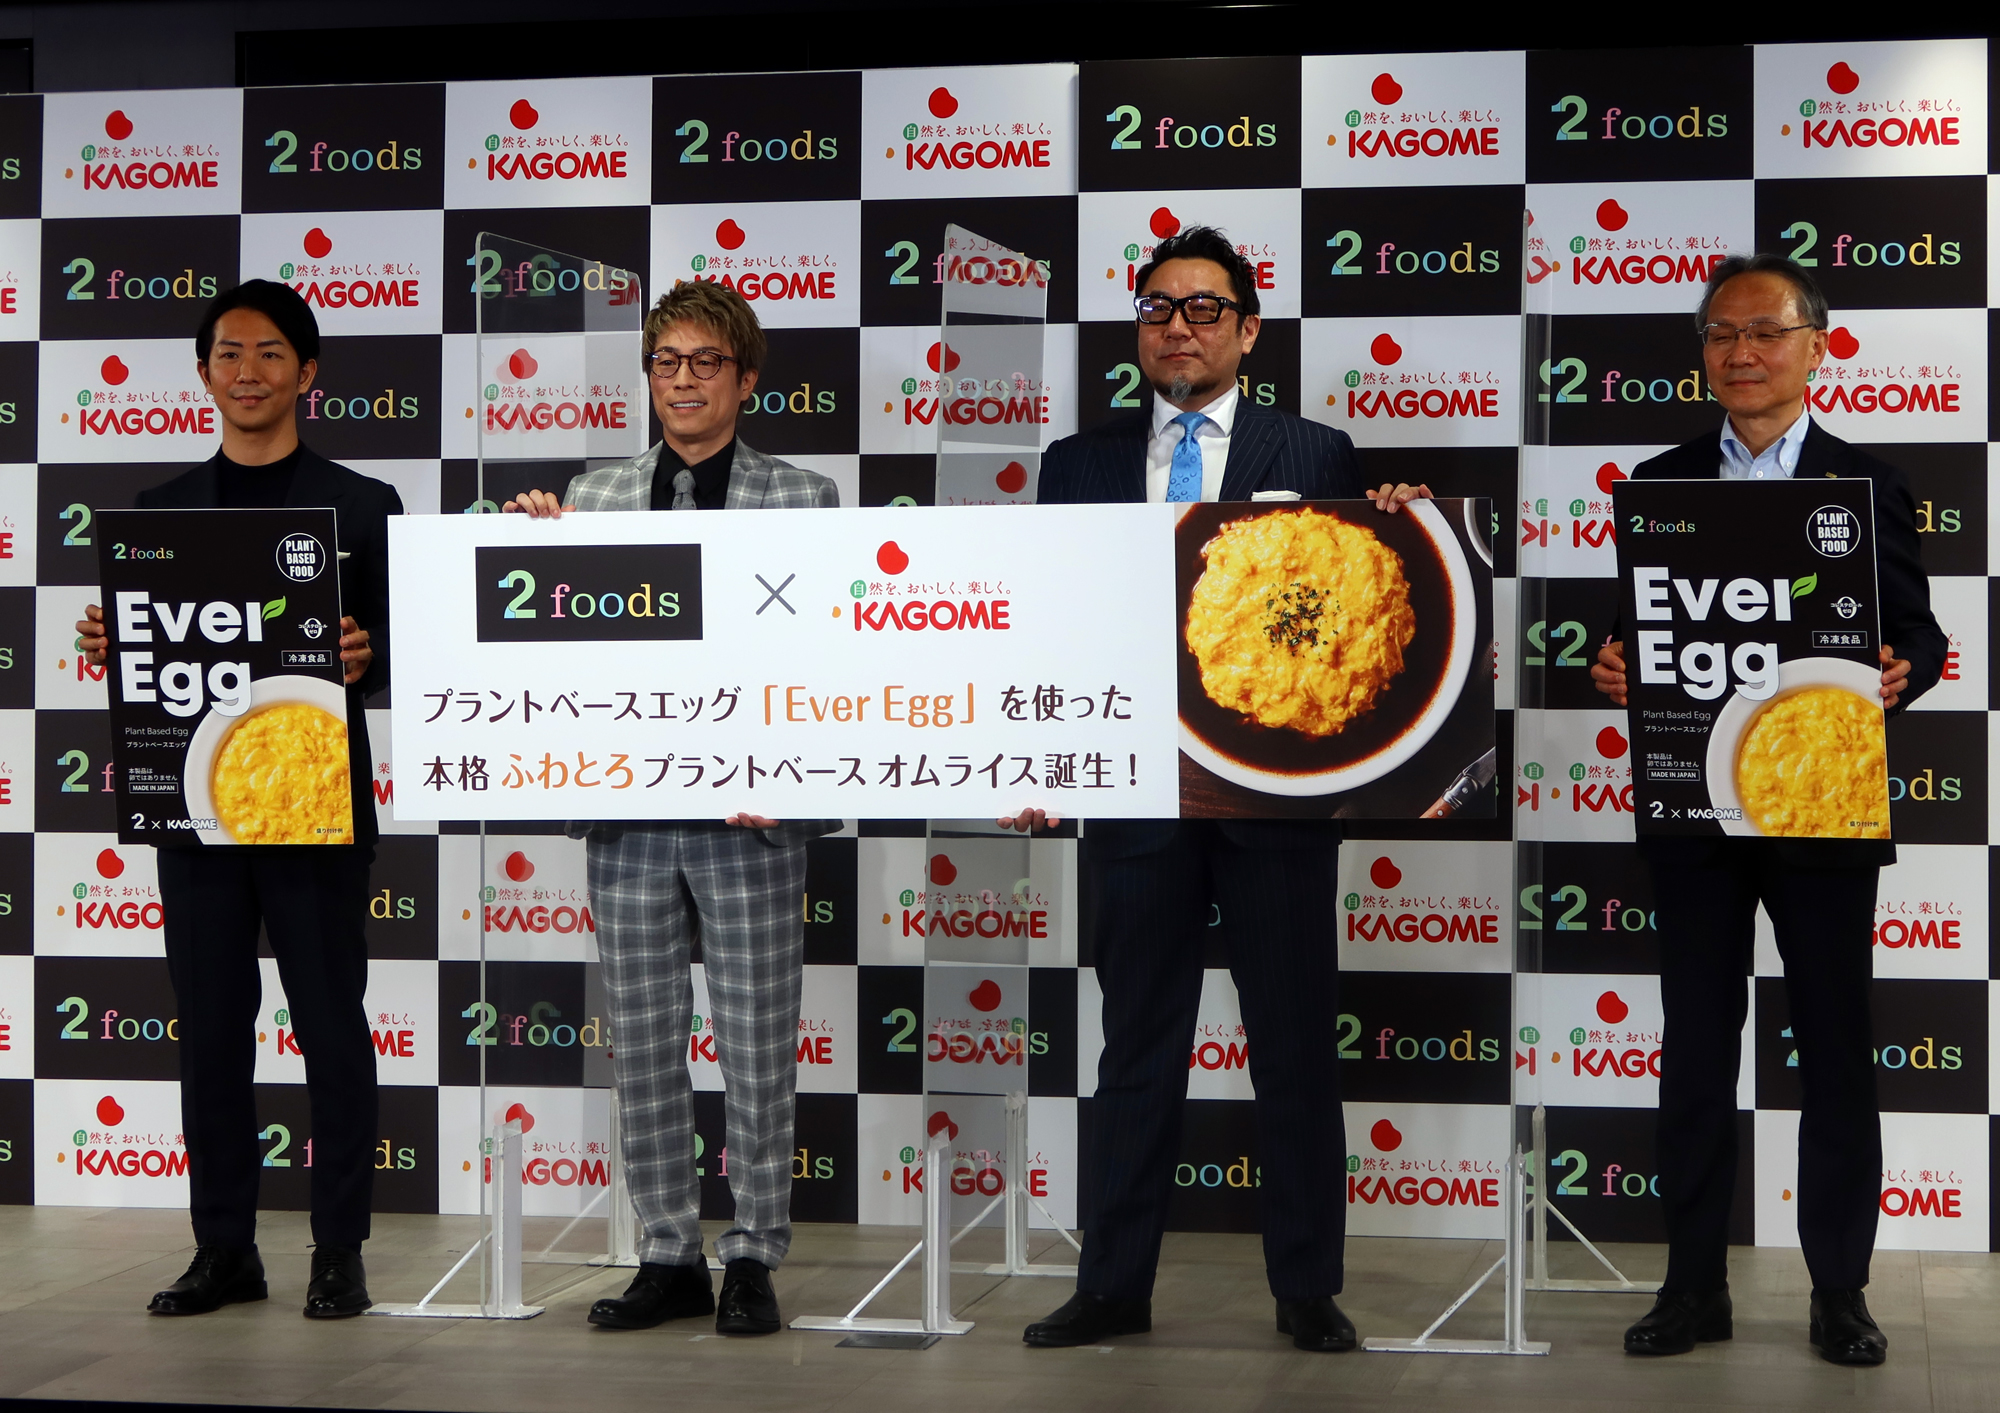 左から、TWO CEOの東 義和さん、ロンドンブーツ1号2号の田村 淳さん、日本洋食協会会長の岩本 正さん、カゴメ社長の山口 聡さん